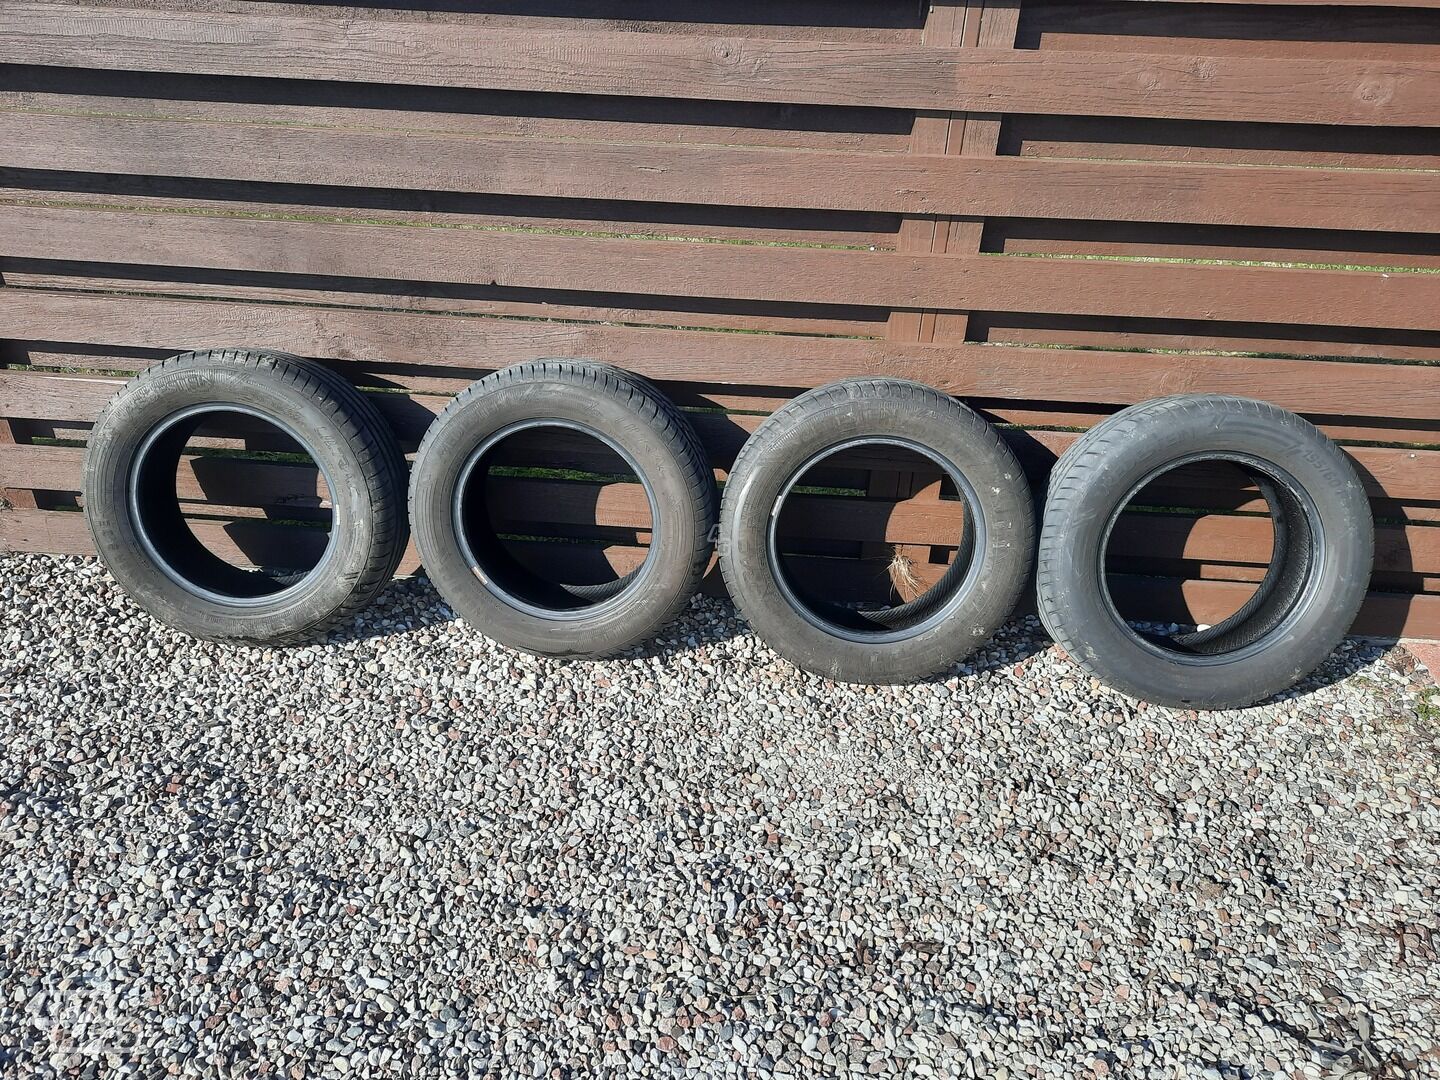 Vredestein R15 summer tyres passanger car